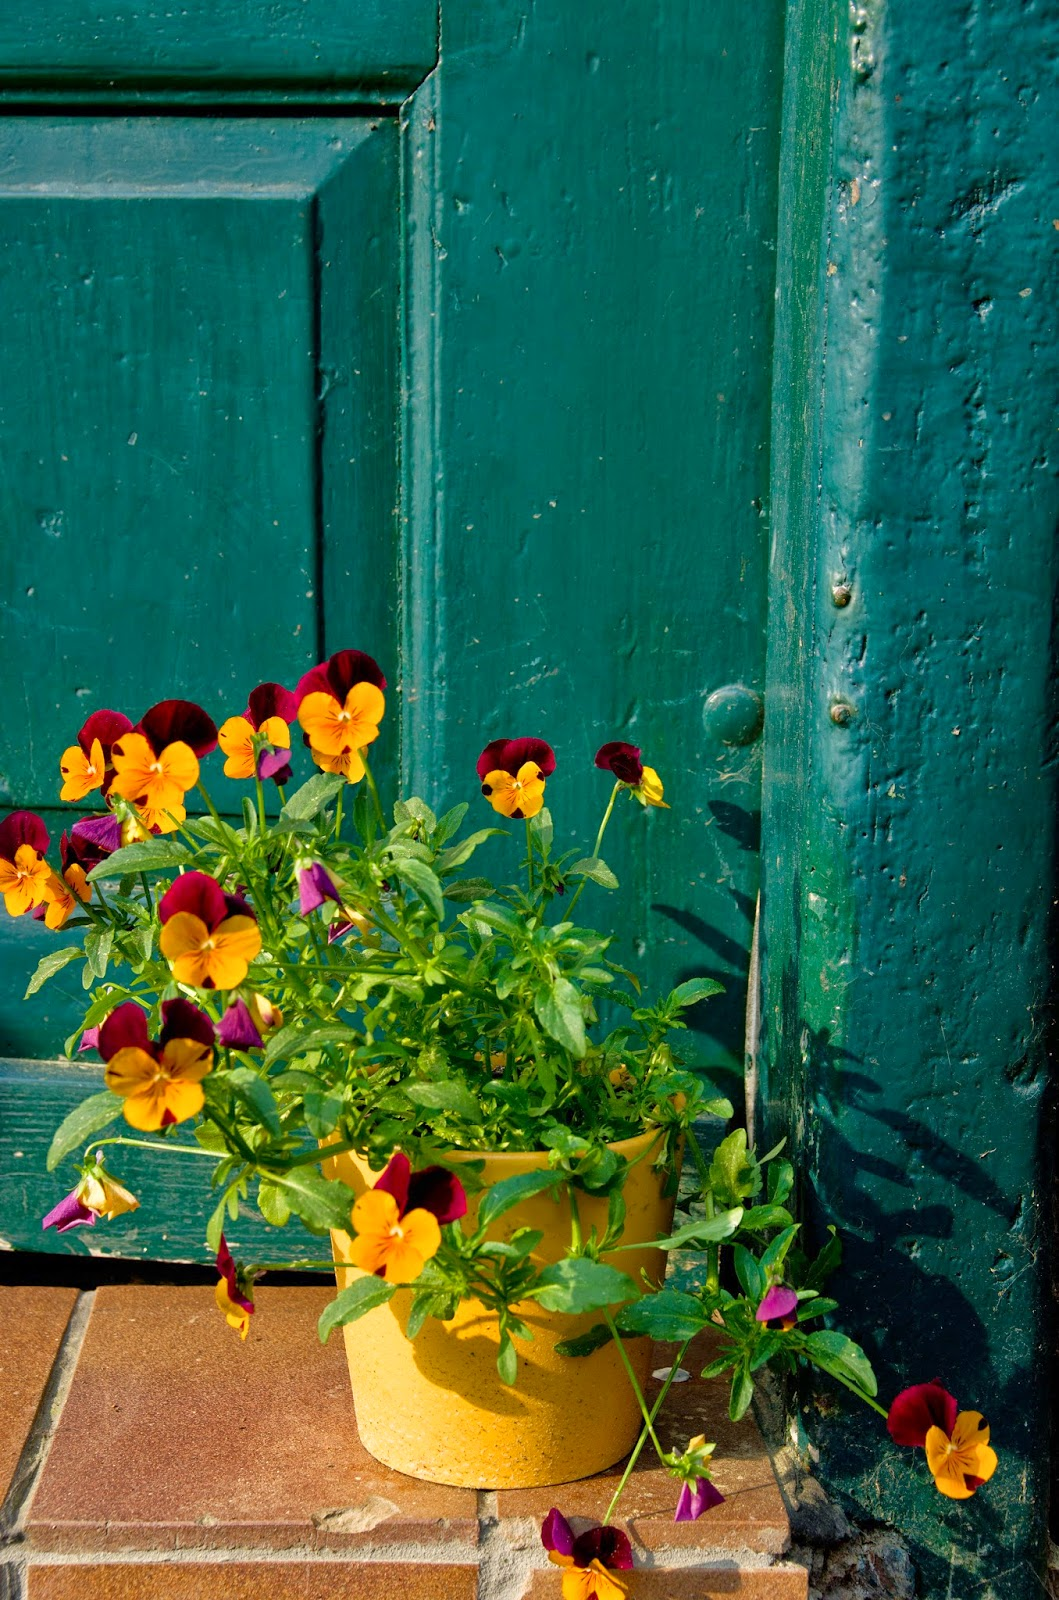 Blumenkübel vor grüner Tür.jpeg